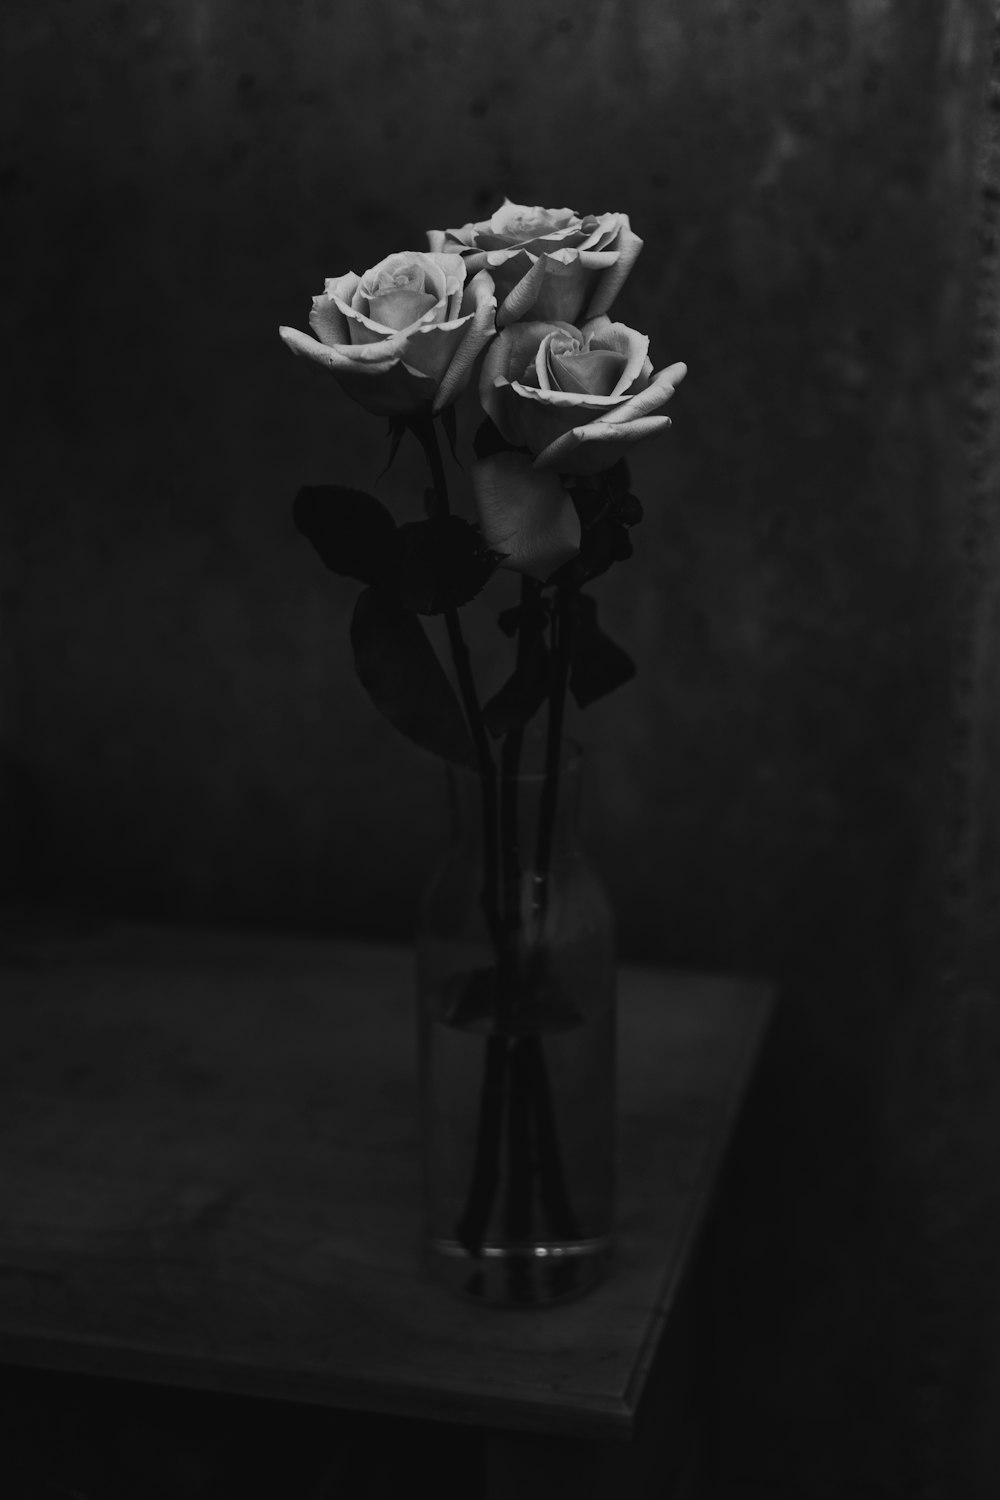 trois fleurs roses dans un vase